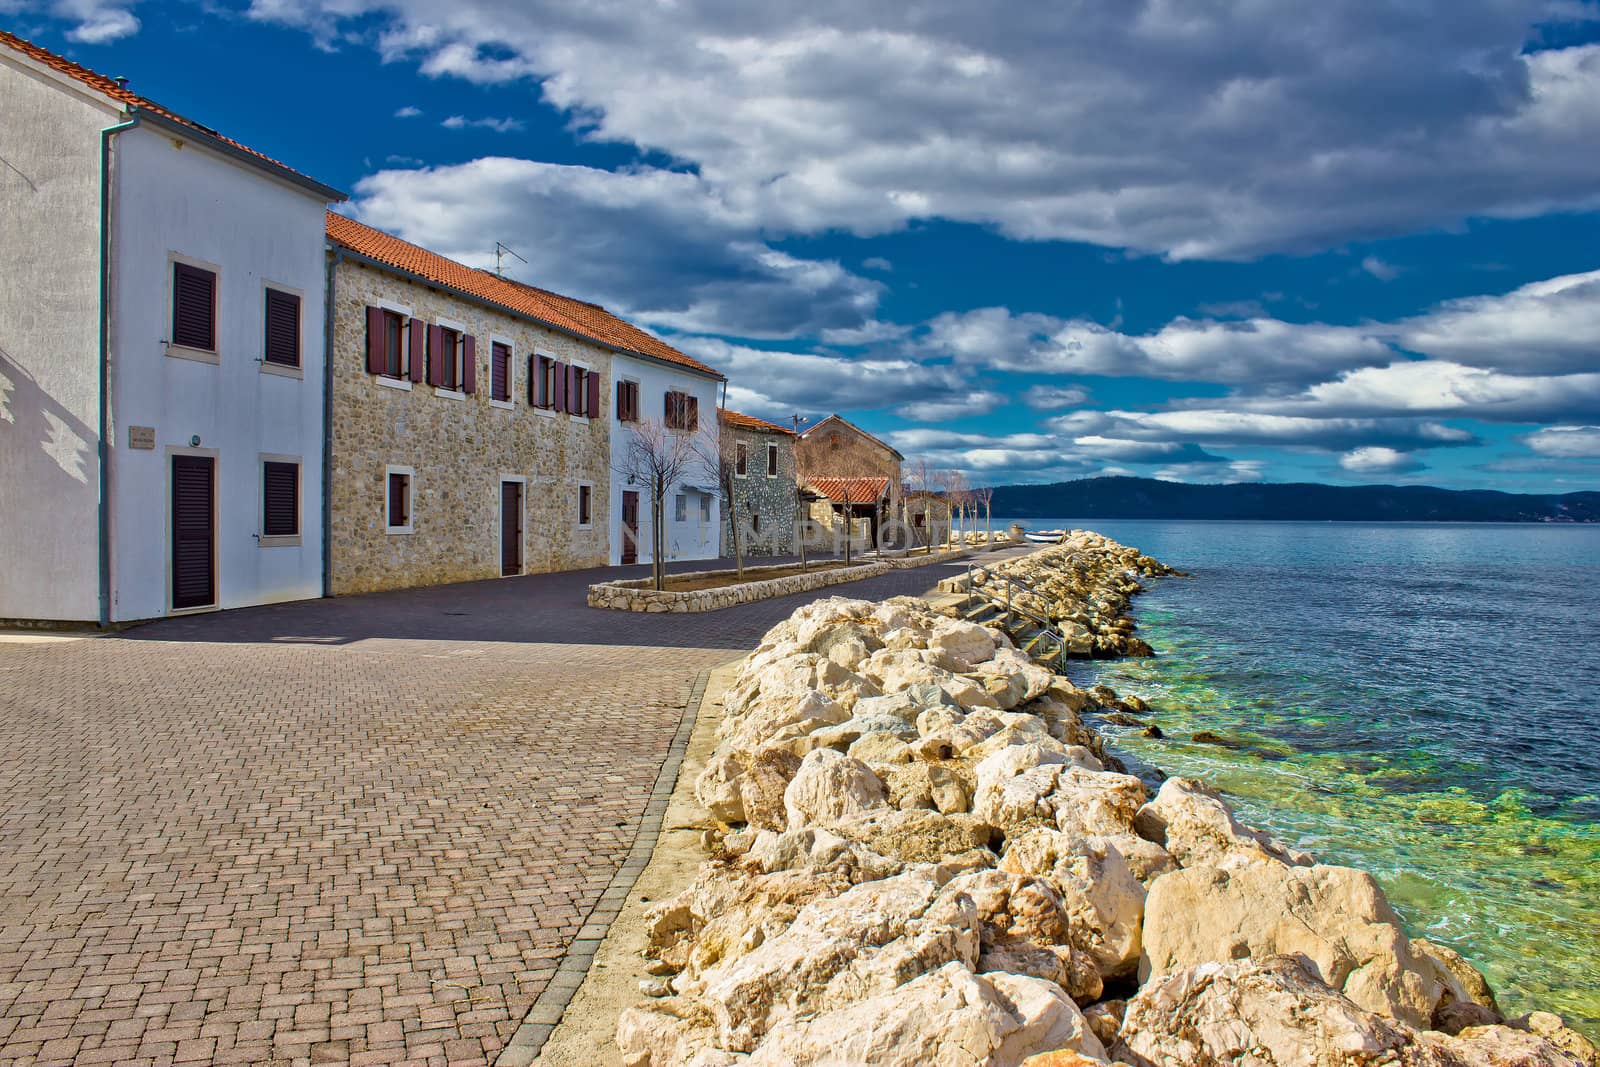 Dalmatian Town of Bibinje waterfront by xbrchx